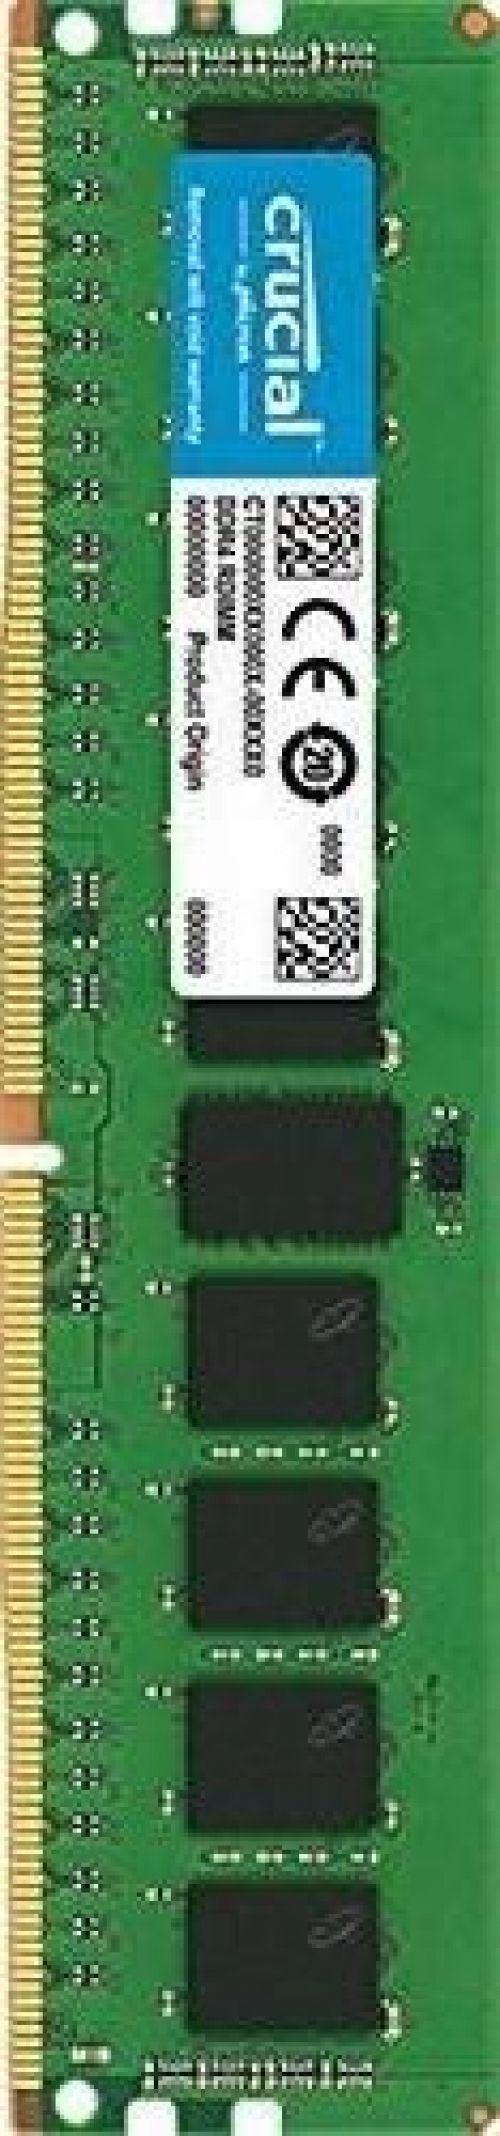 Crucial Memoria Crucial Dimm 8gb DDR4 2600MHZ ECC registrada CT8G4RFD8266 servidor 